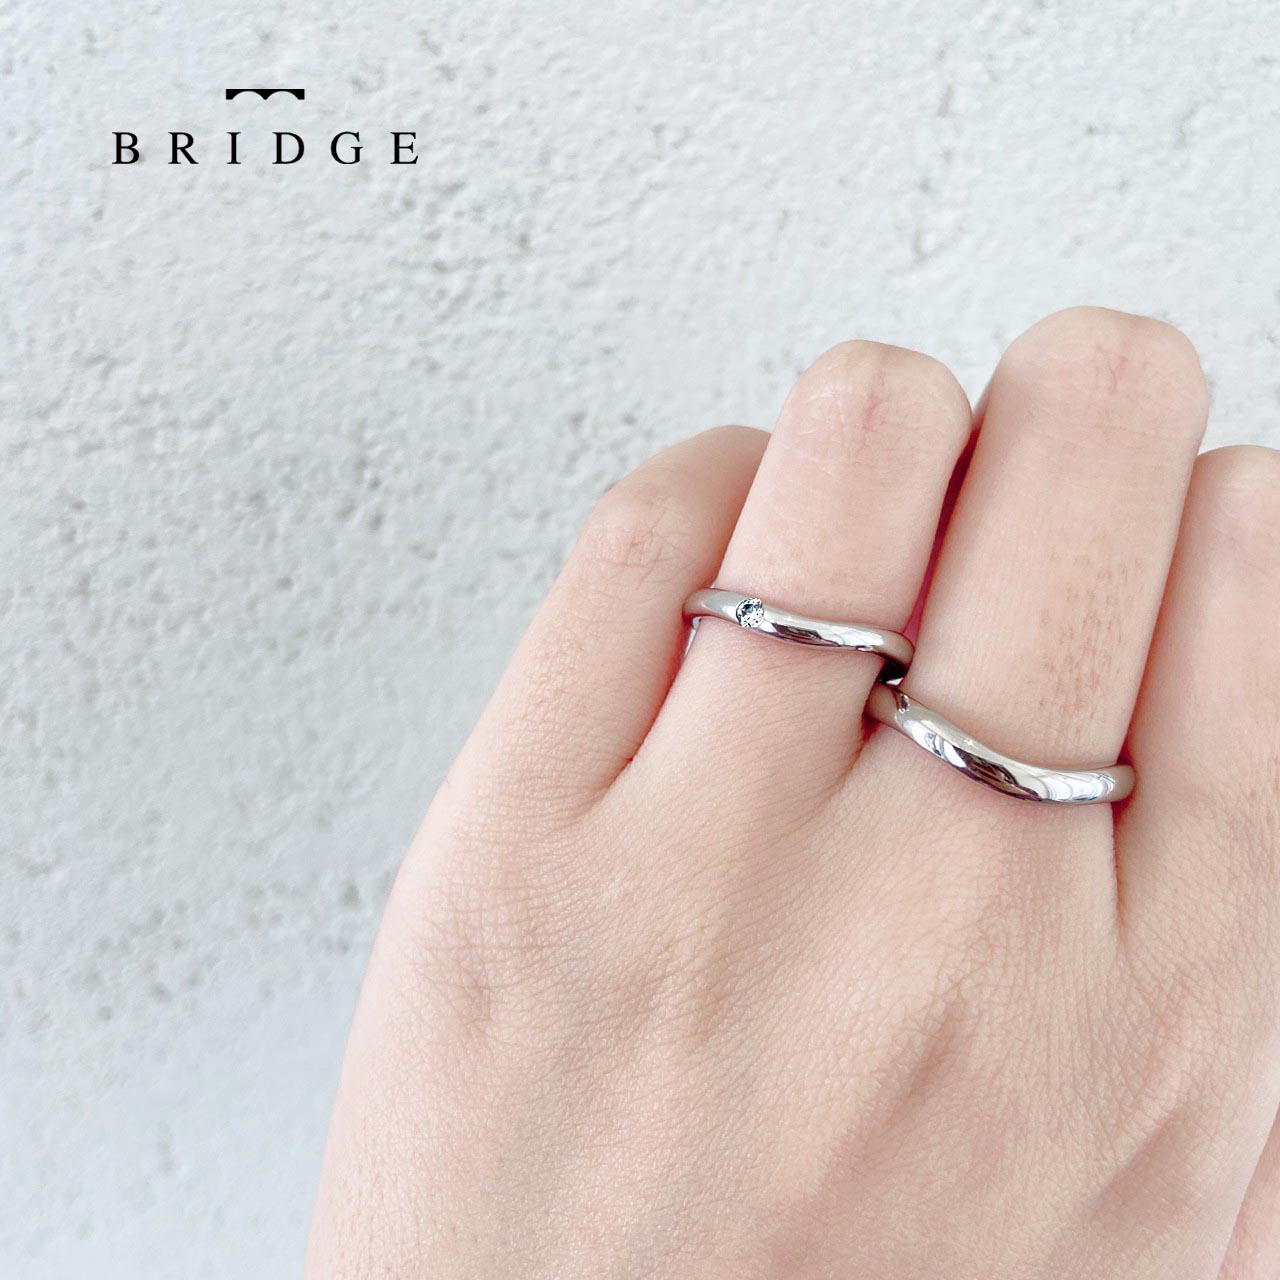 BRIDGEつむぎは5月の朝露がモチーフのダイヤ付き結婚指輪